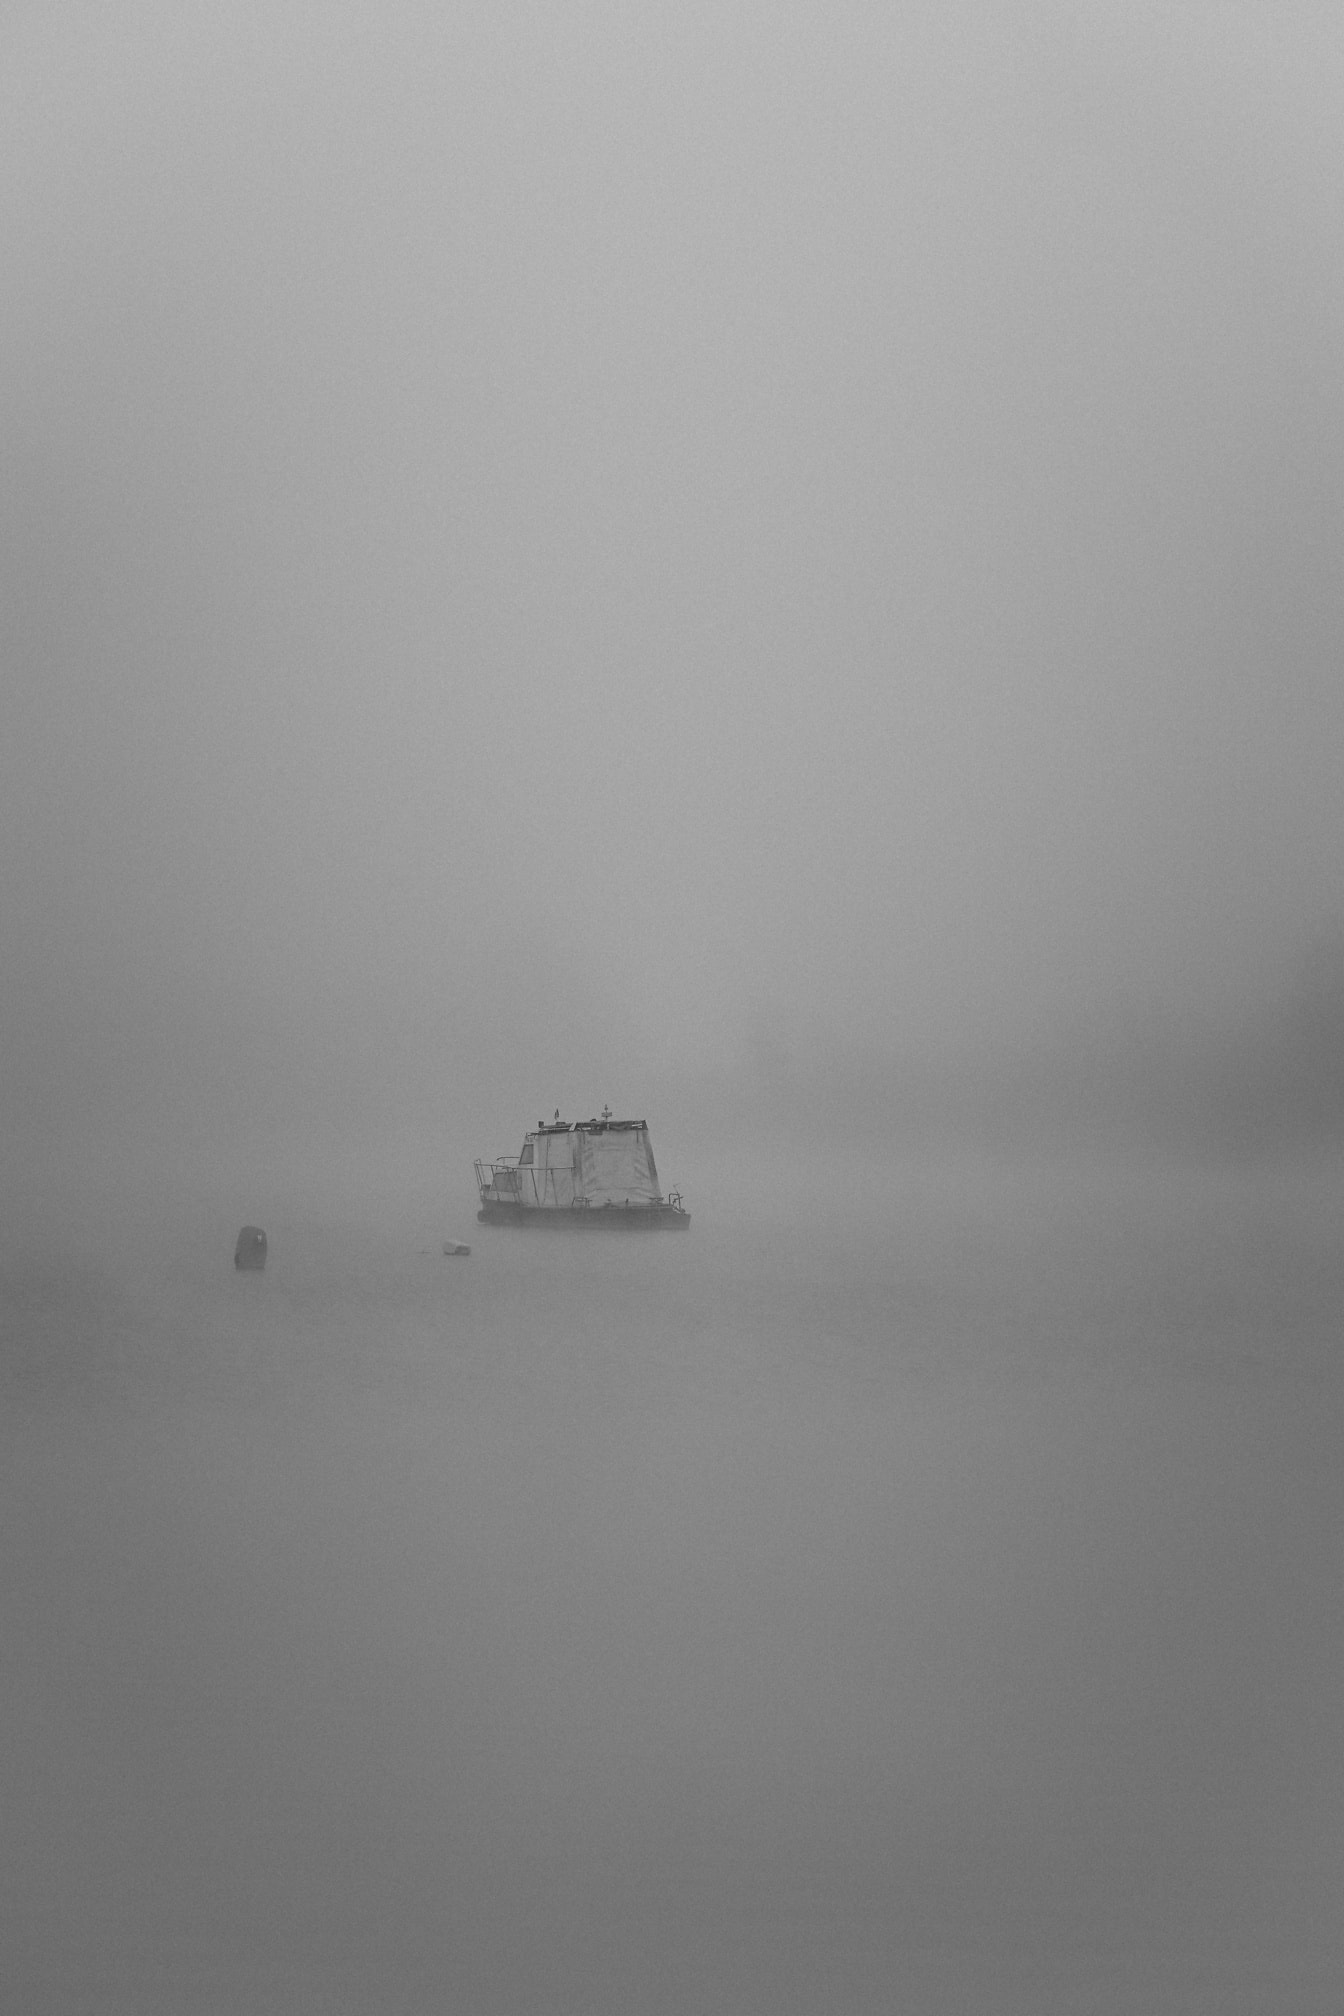 Ảnh đen trắng của tàu đánh cá ở xa trên sông trong sương mù dày đặc